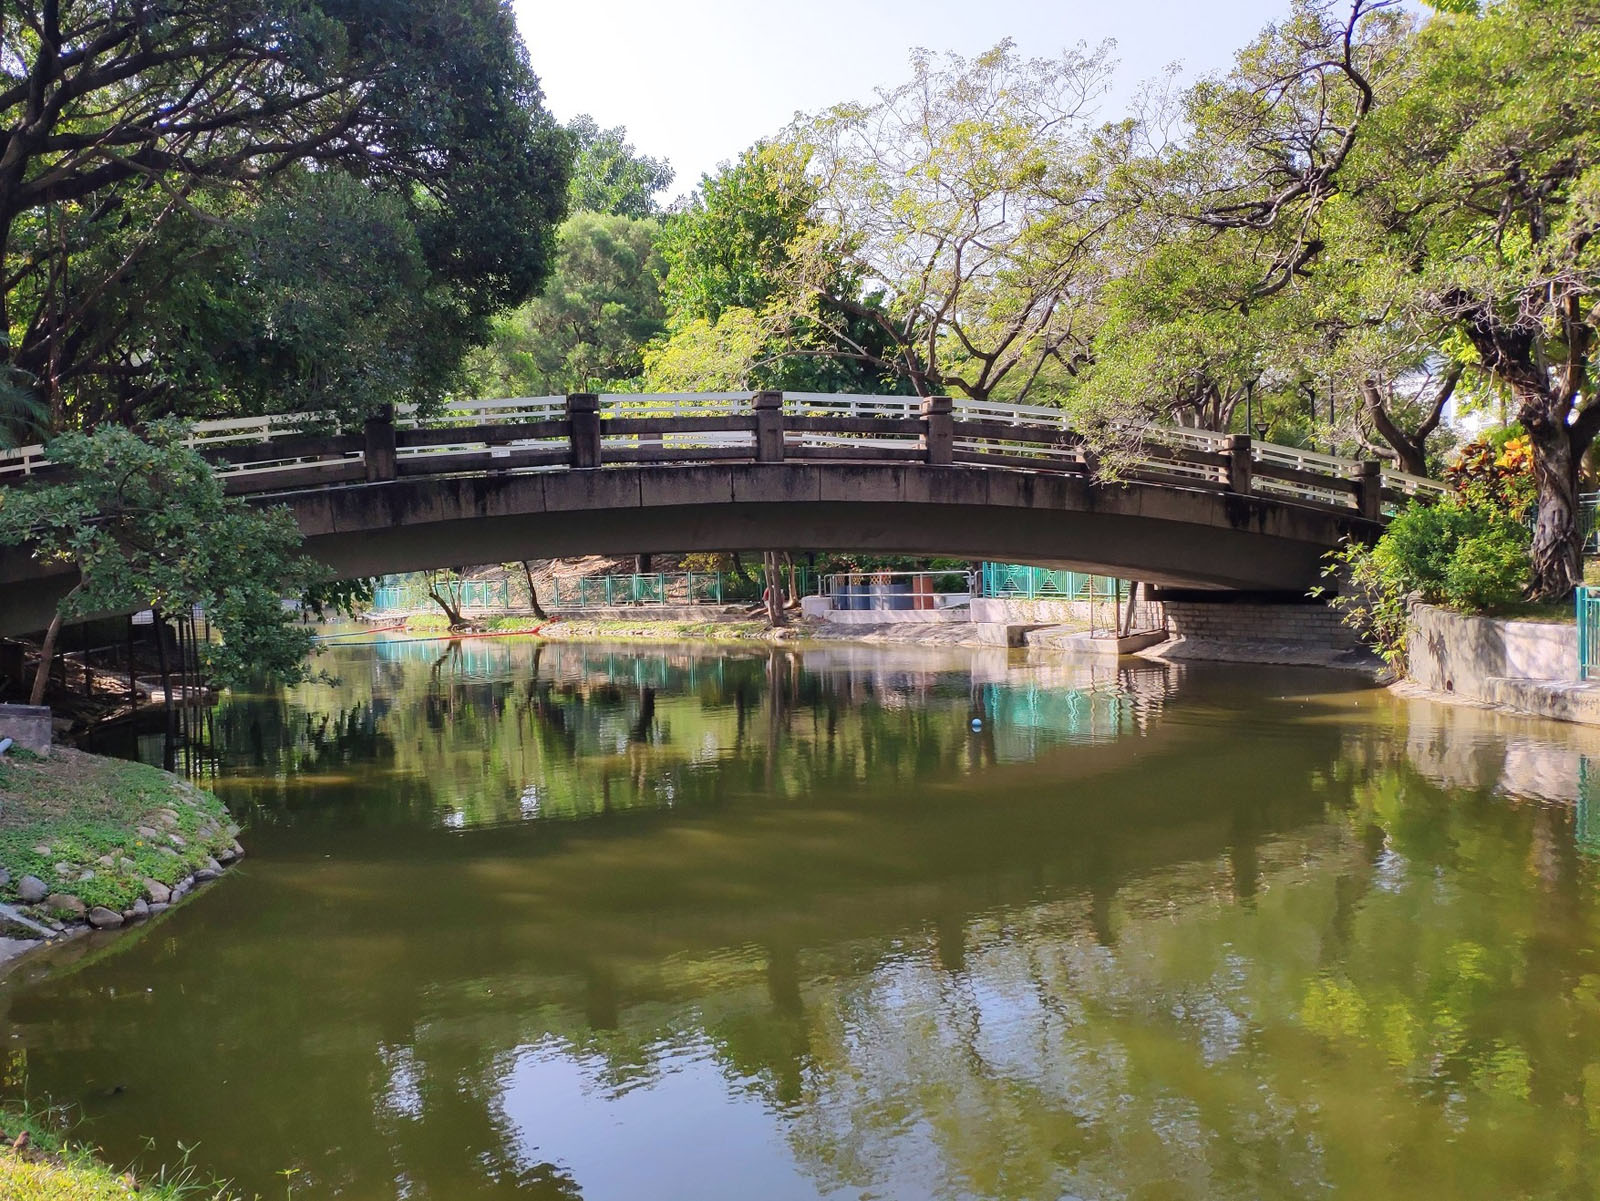 Photo 1: Tuen Mun Park